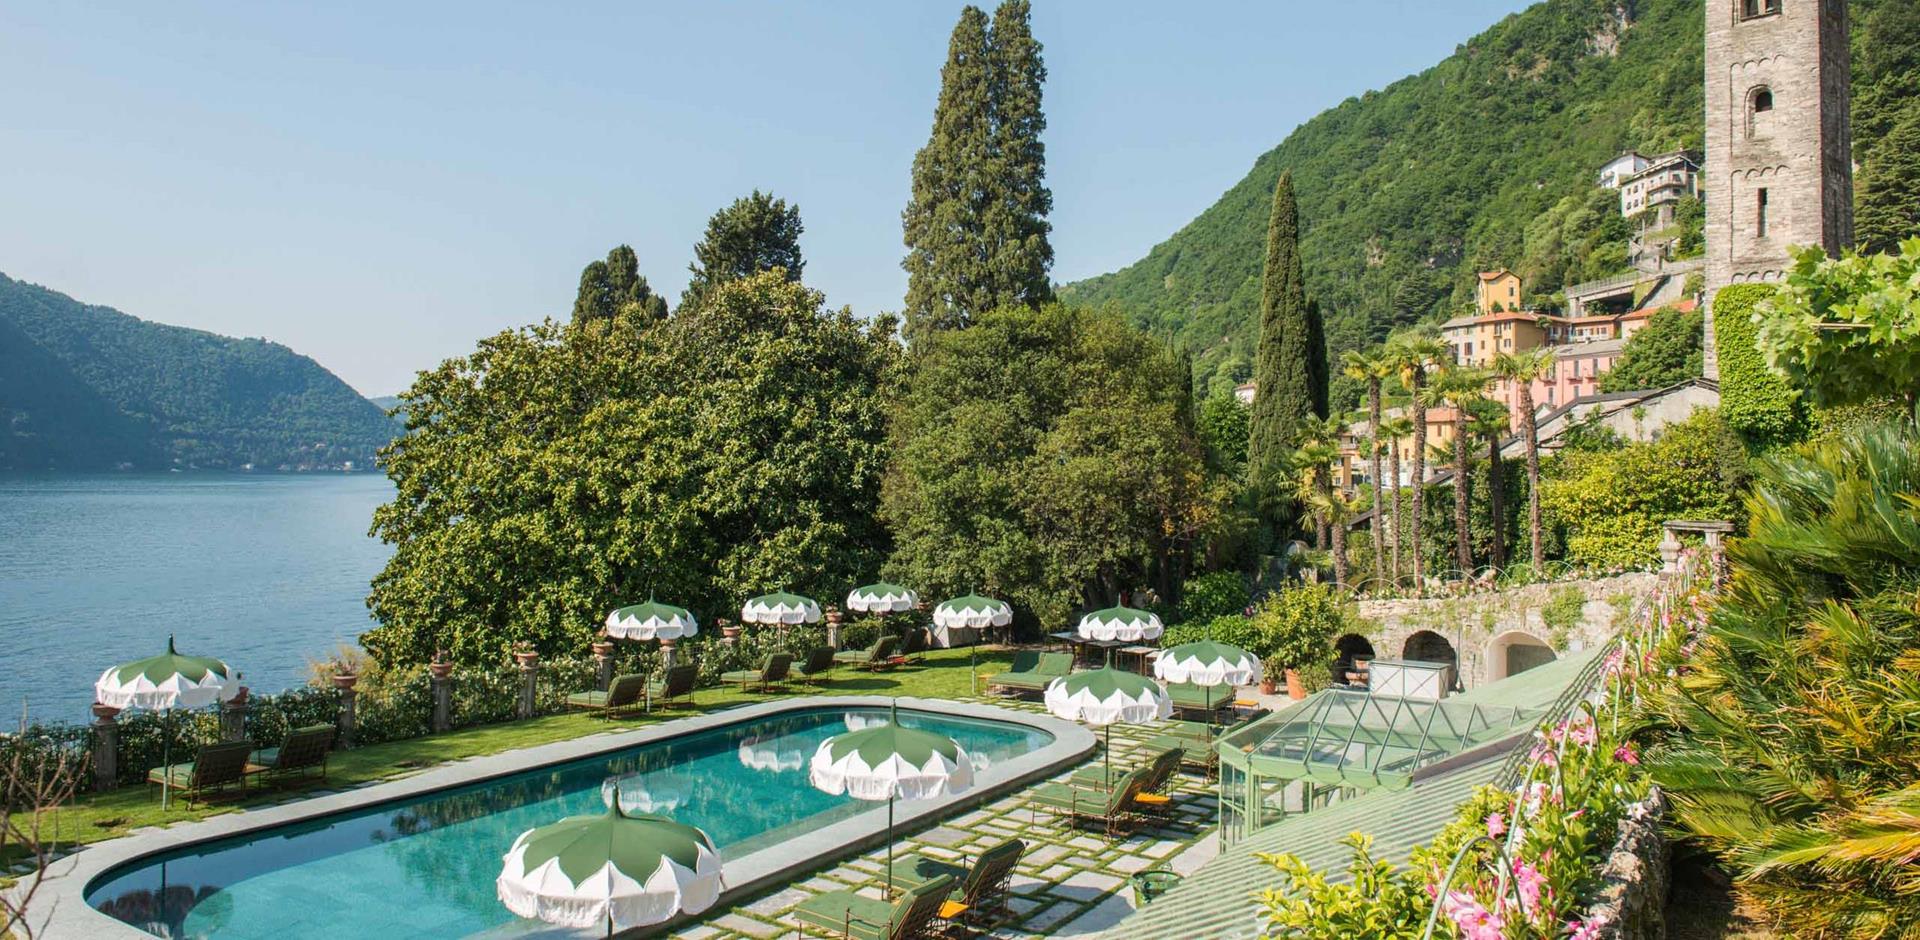 Garden, Passalacqua Hotel, Lake Como, Italy